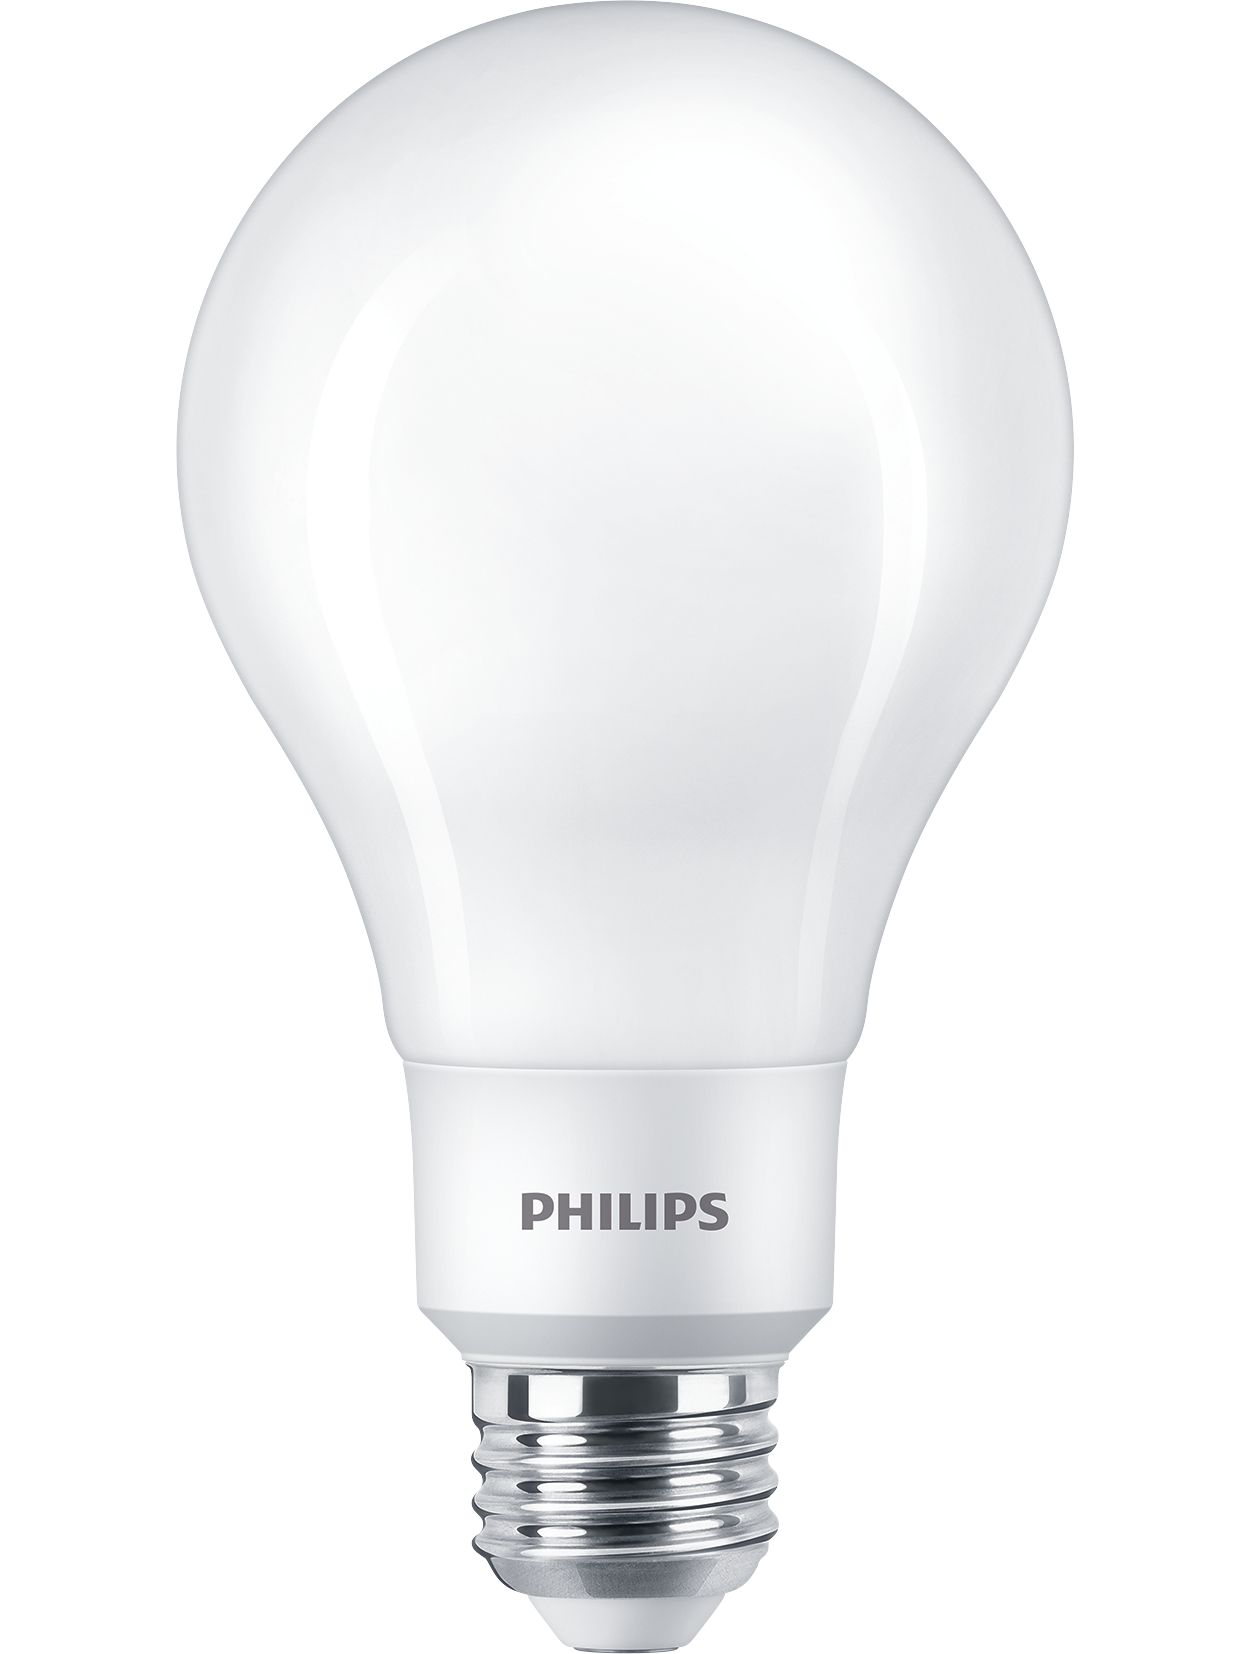 A light bulb like no other